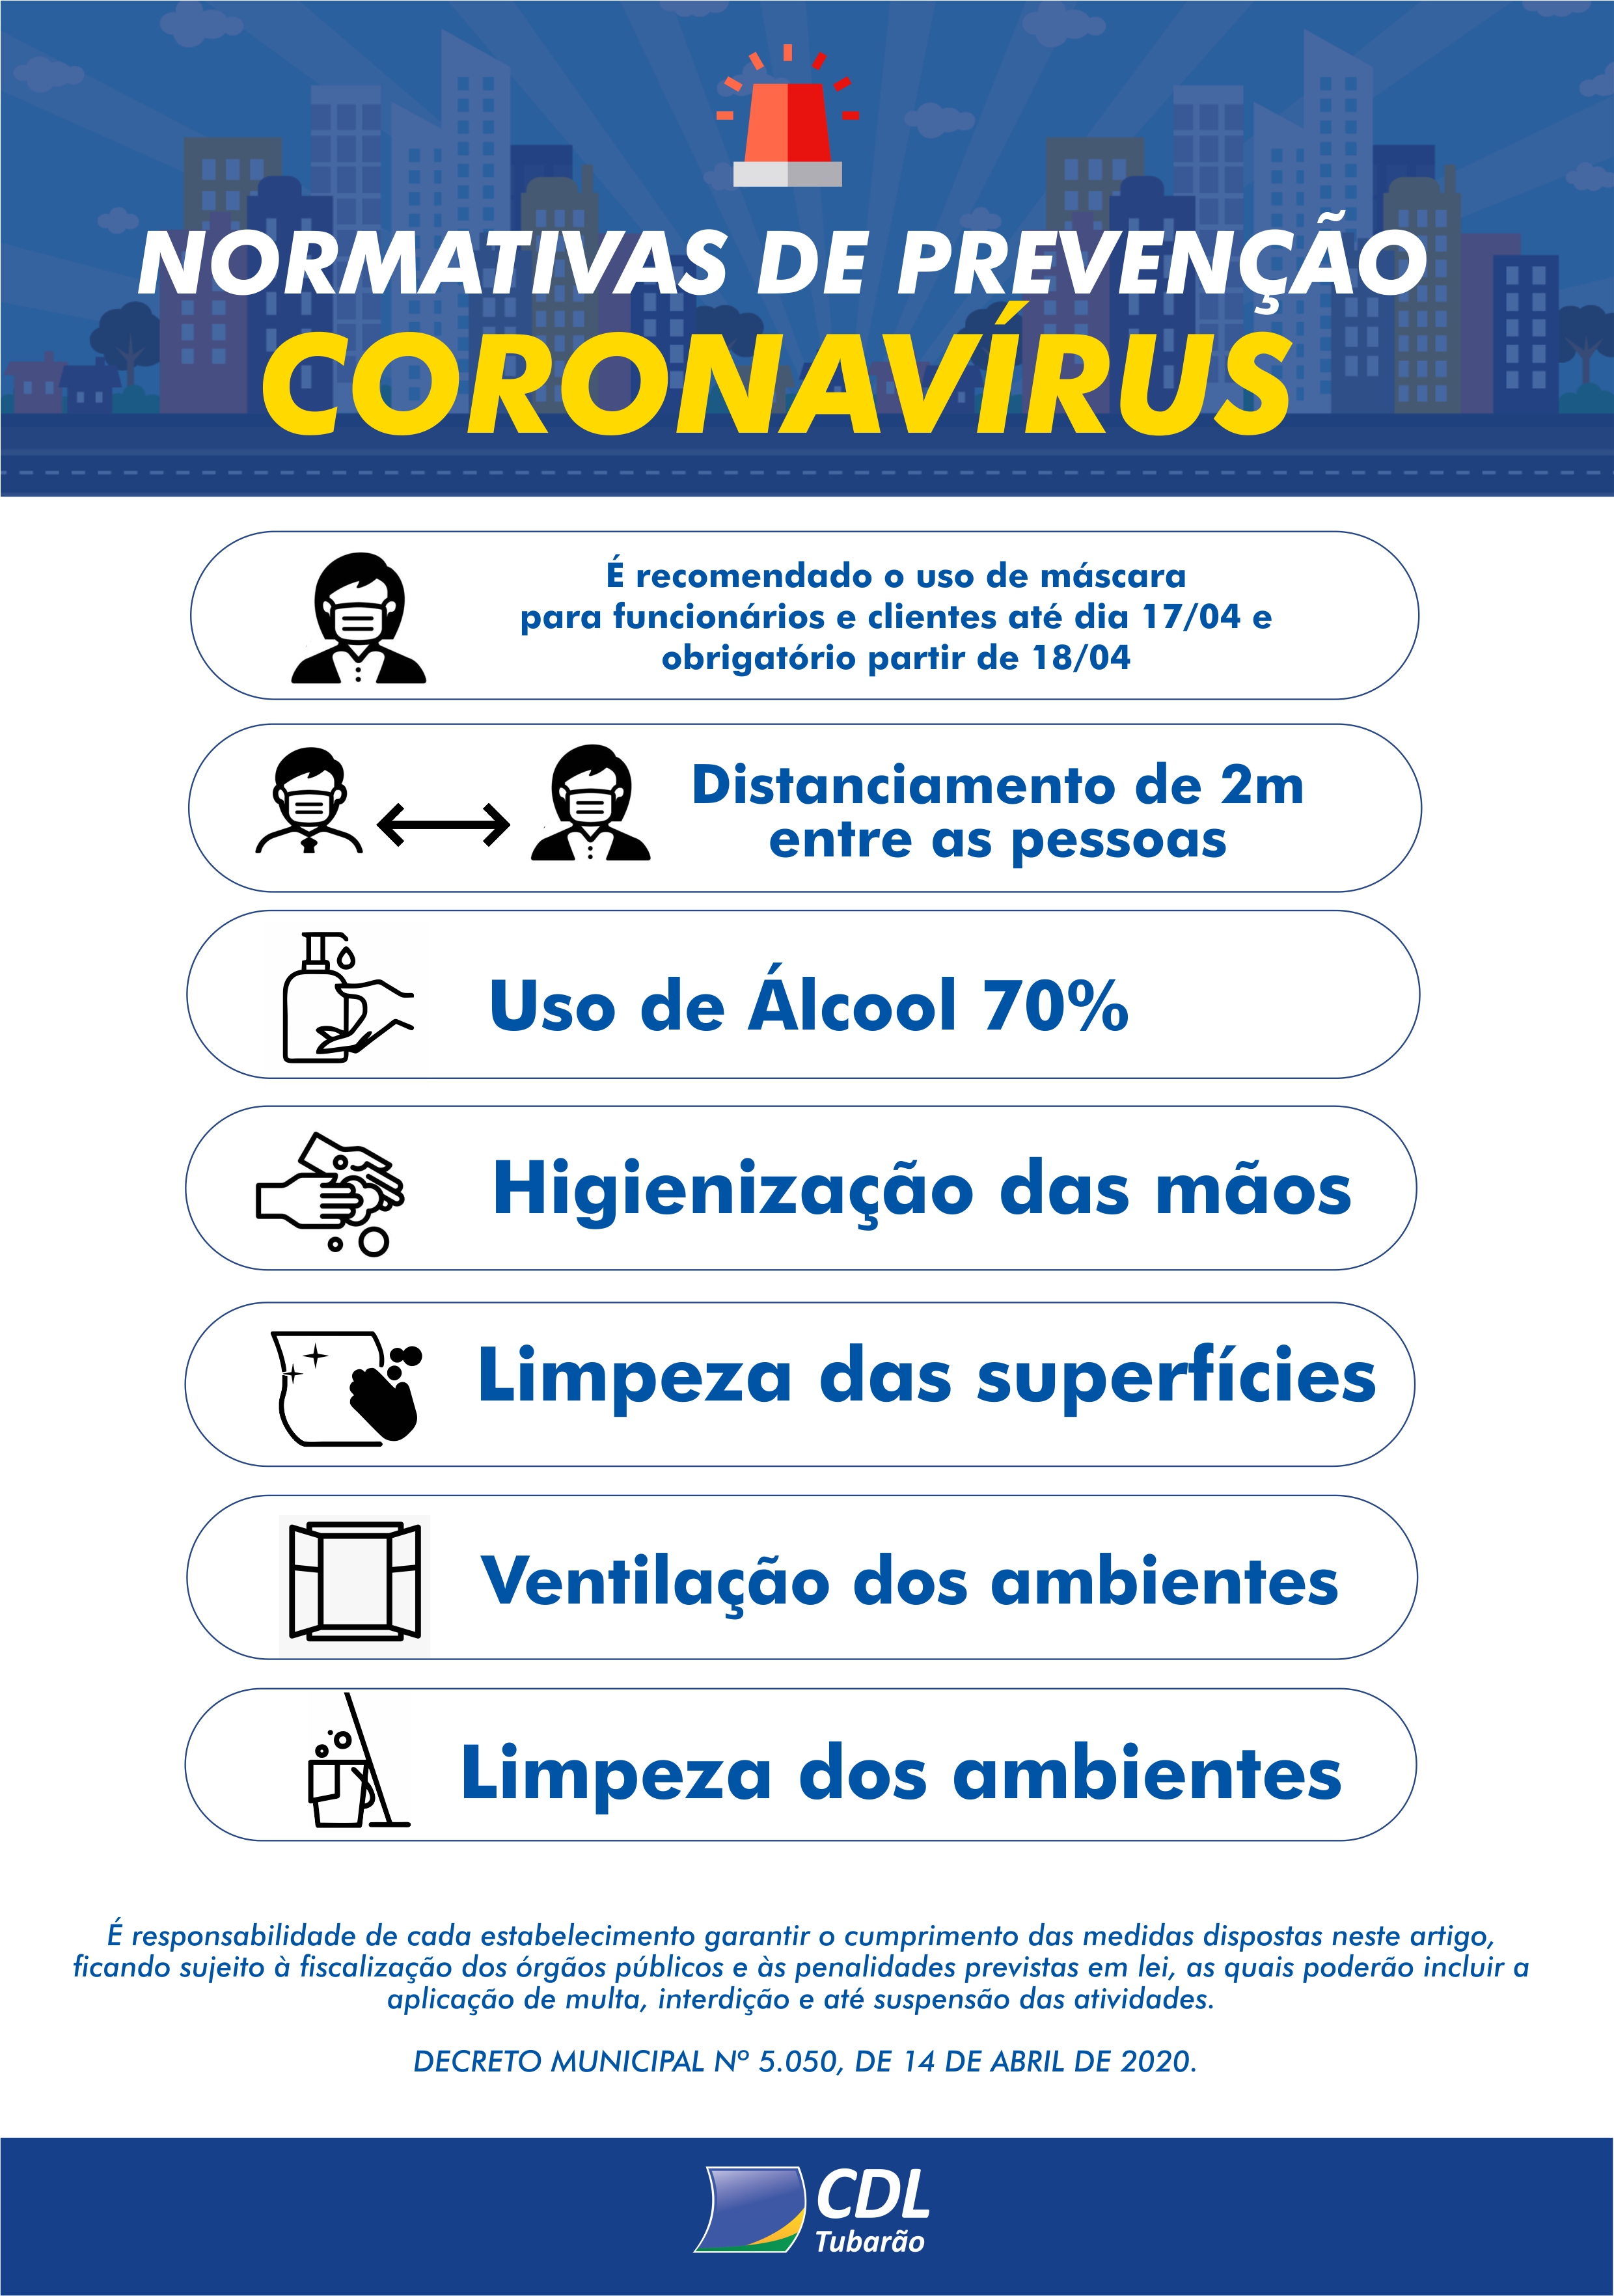 Atualização do cartaz da normas de prevenção do coronavírus | CDL de Tubarão